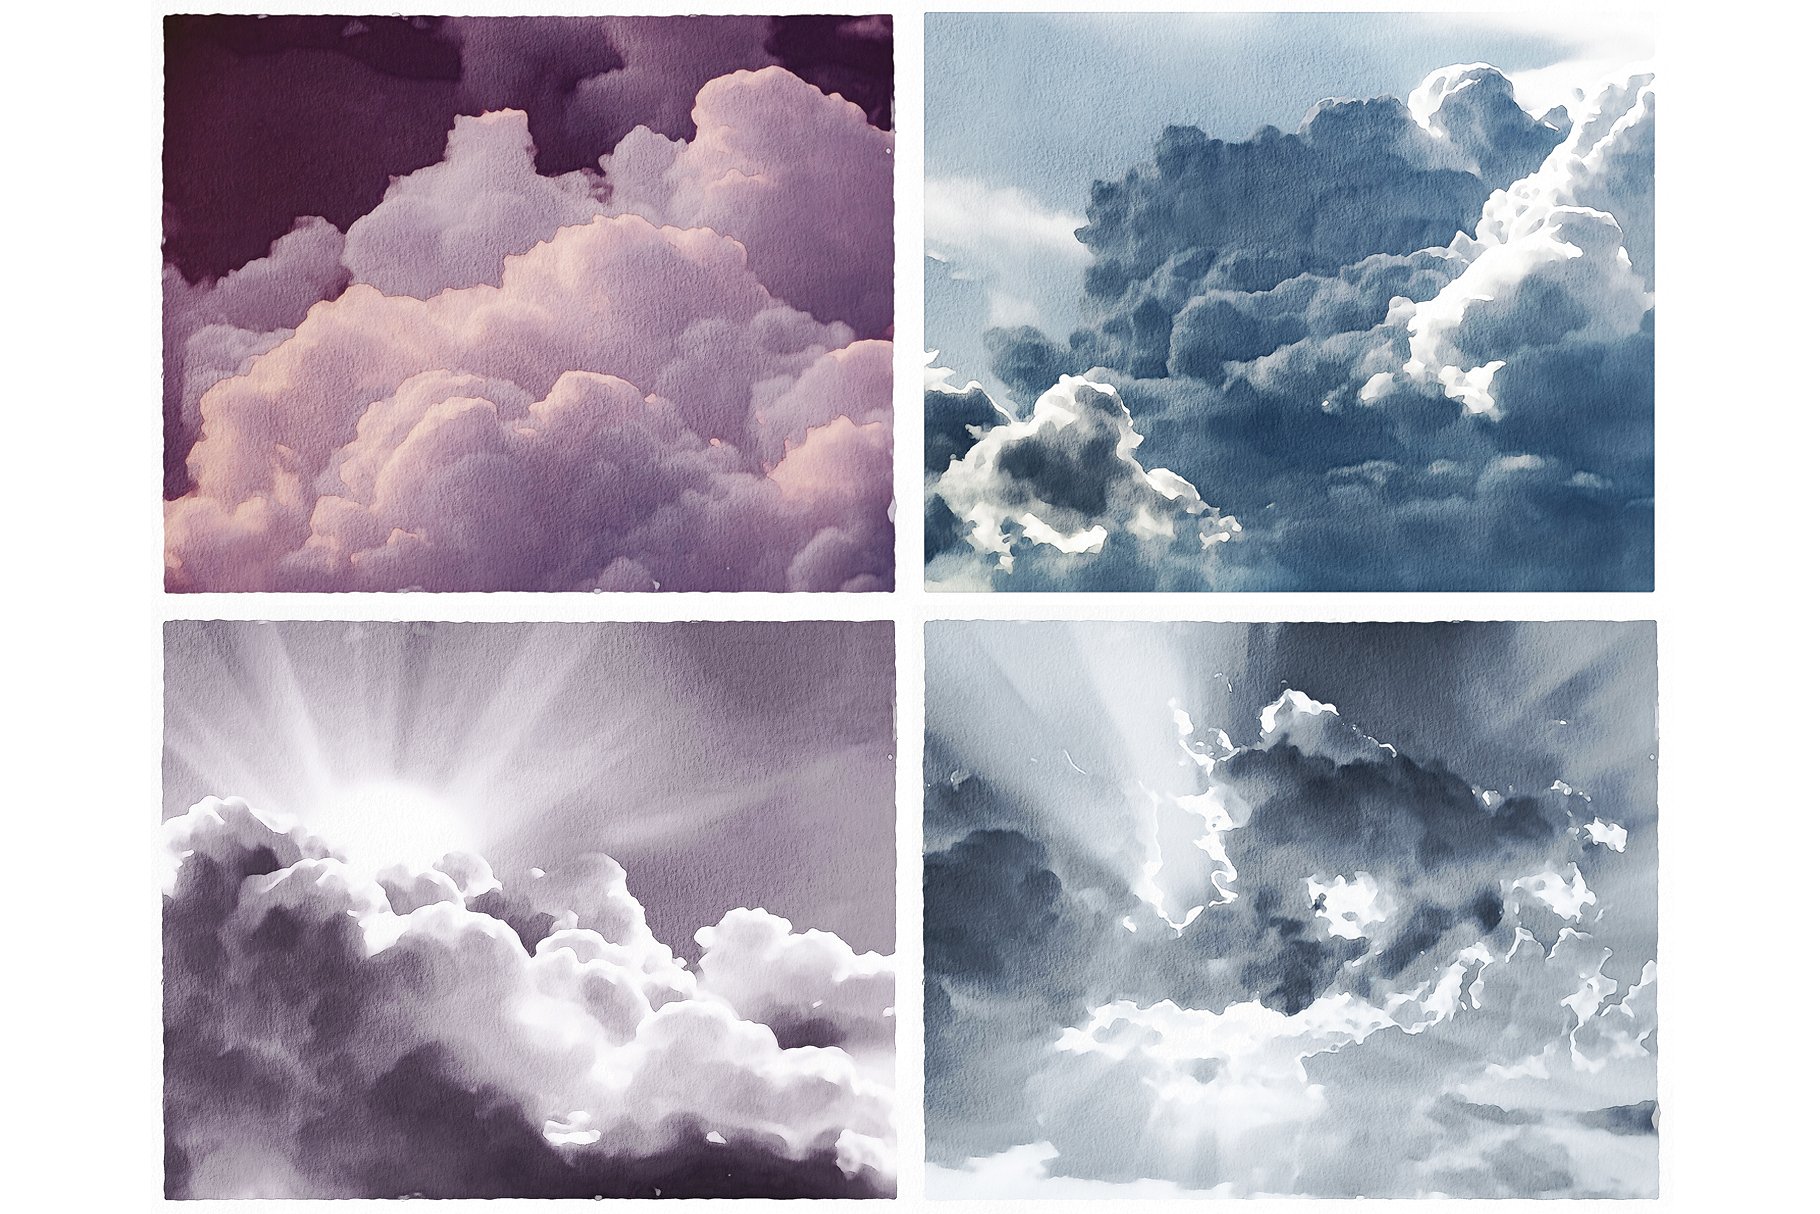 7高分辨率水彩云彩纹理 7 High-Resolution Watercolor Clouds Textures插图1